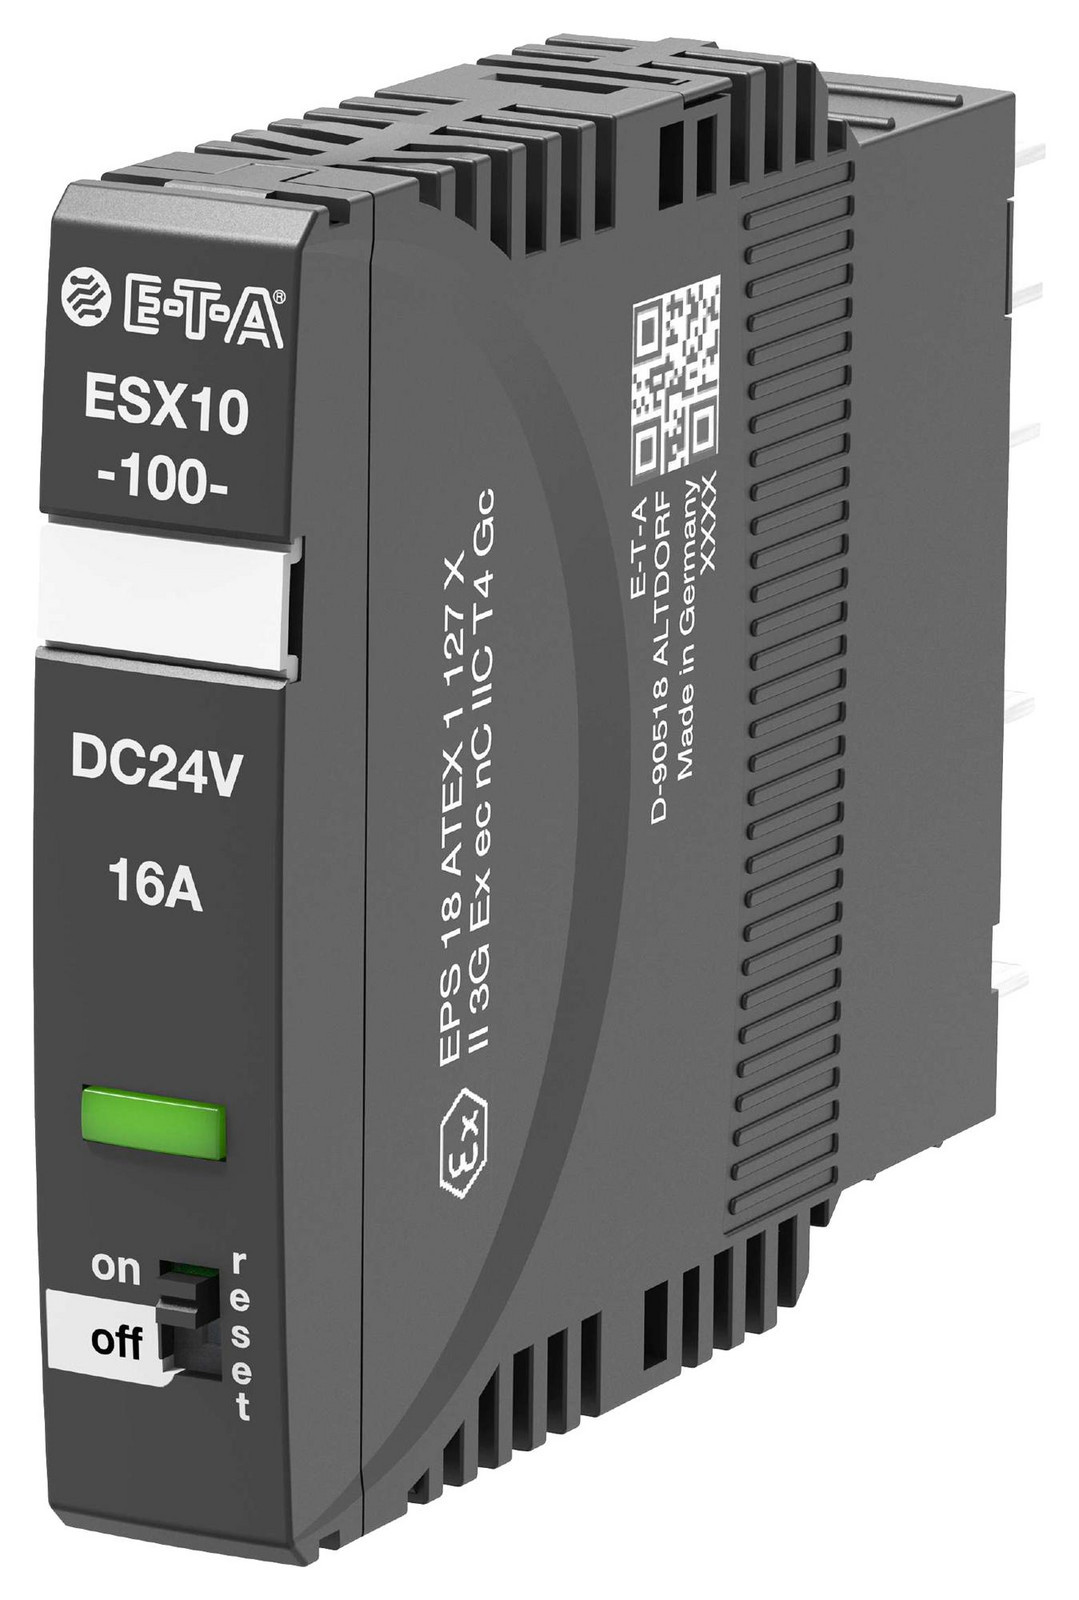 Eta Esx10-100-Dc24V-16A-E Electronic Circuit Protector, 24Vdc, 16A